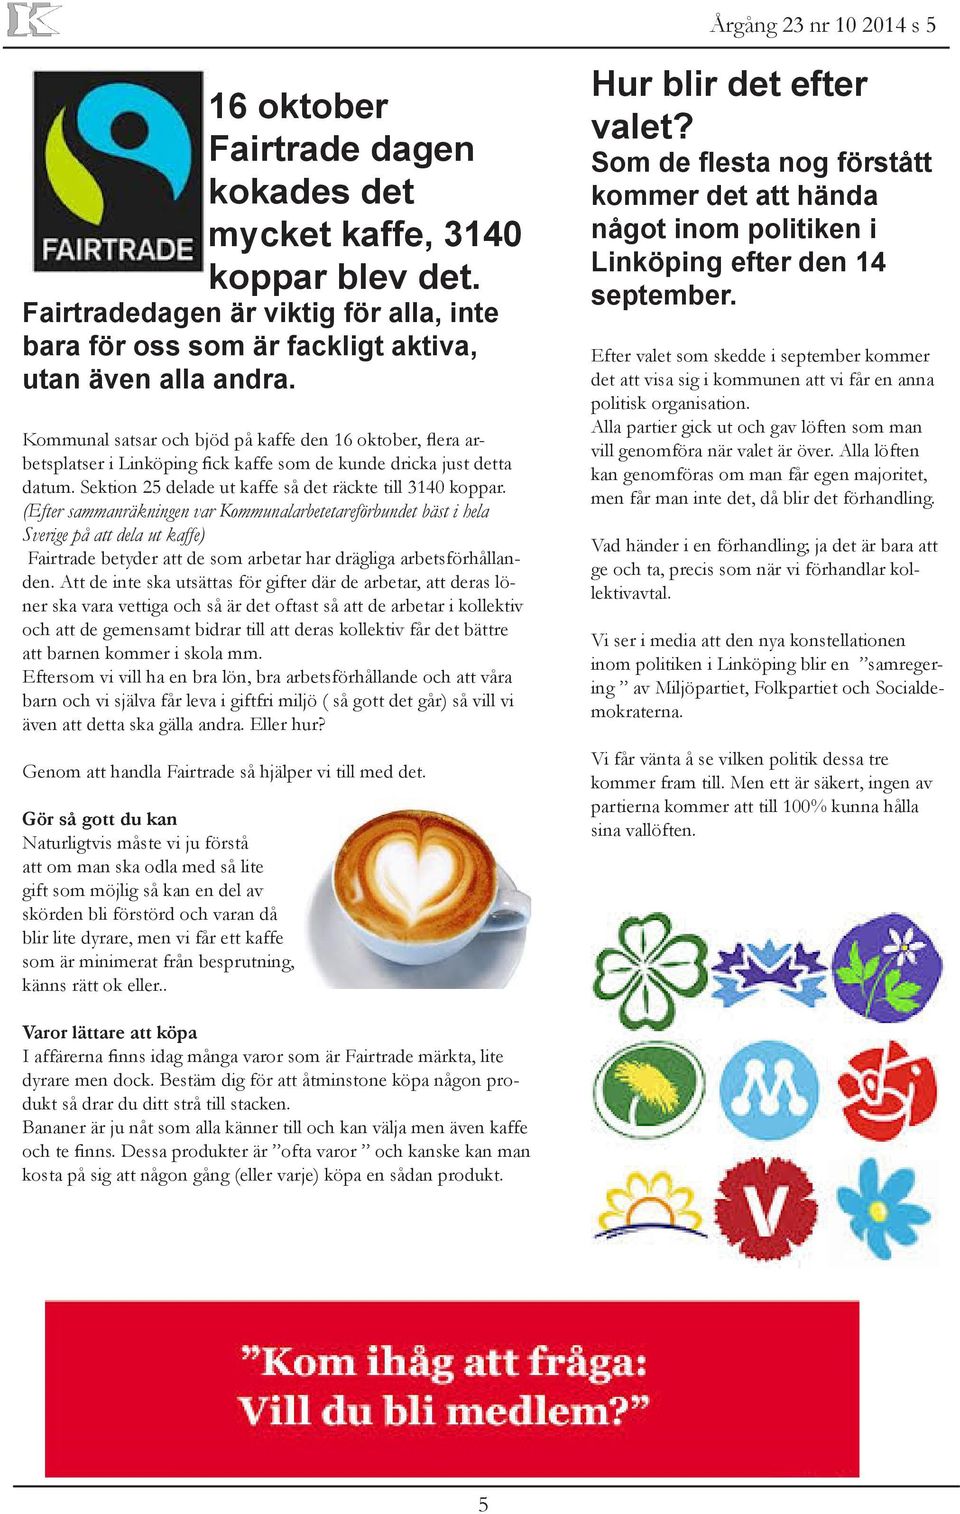 (Efter sammanräkningen var Kommunalarbetetareförbundet bäst i hela Sverige på att dela ut kaffe) Fairtrade betyder att de som arbetar har drägliga arbetsförhållanden.